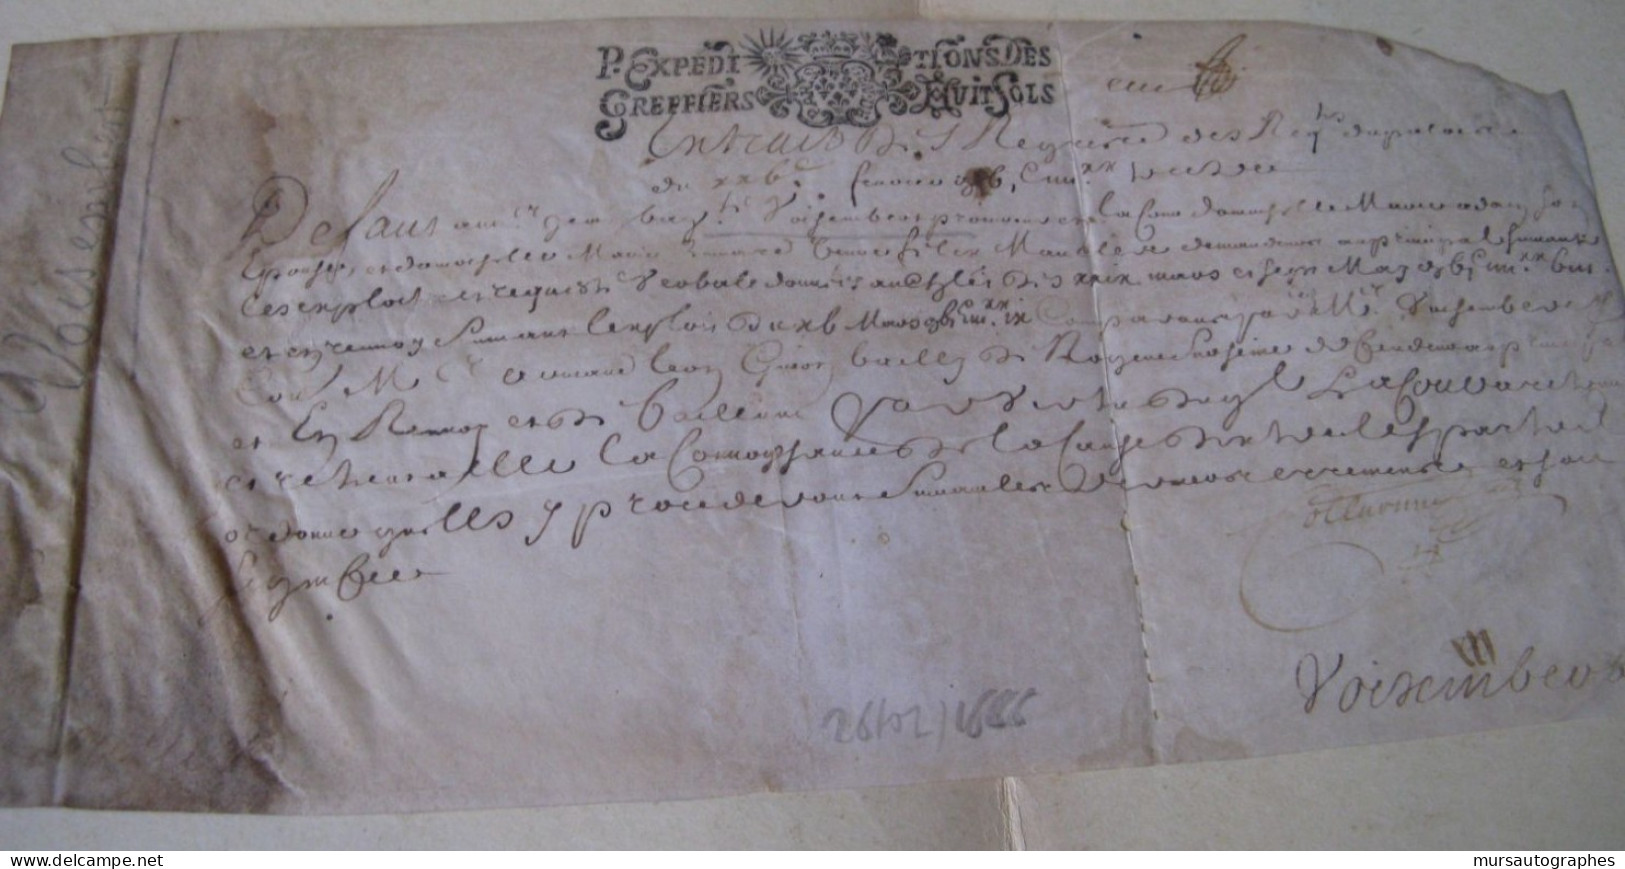 J.B. DE VOISEMBERT Autographe Signé 1666 PROCUREUR PARLEMENT PARIS Parchemin - Personnages Historiques